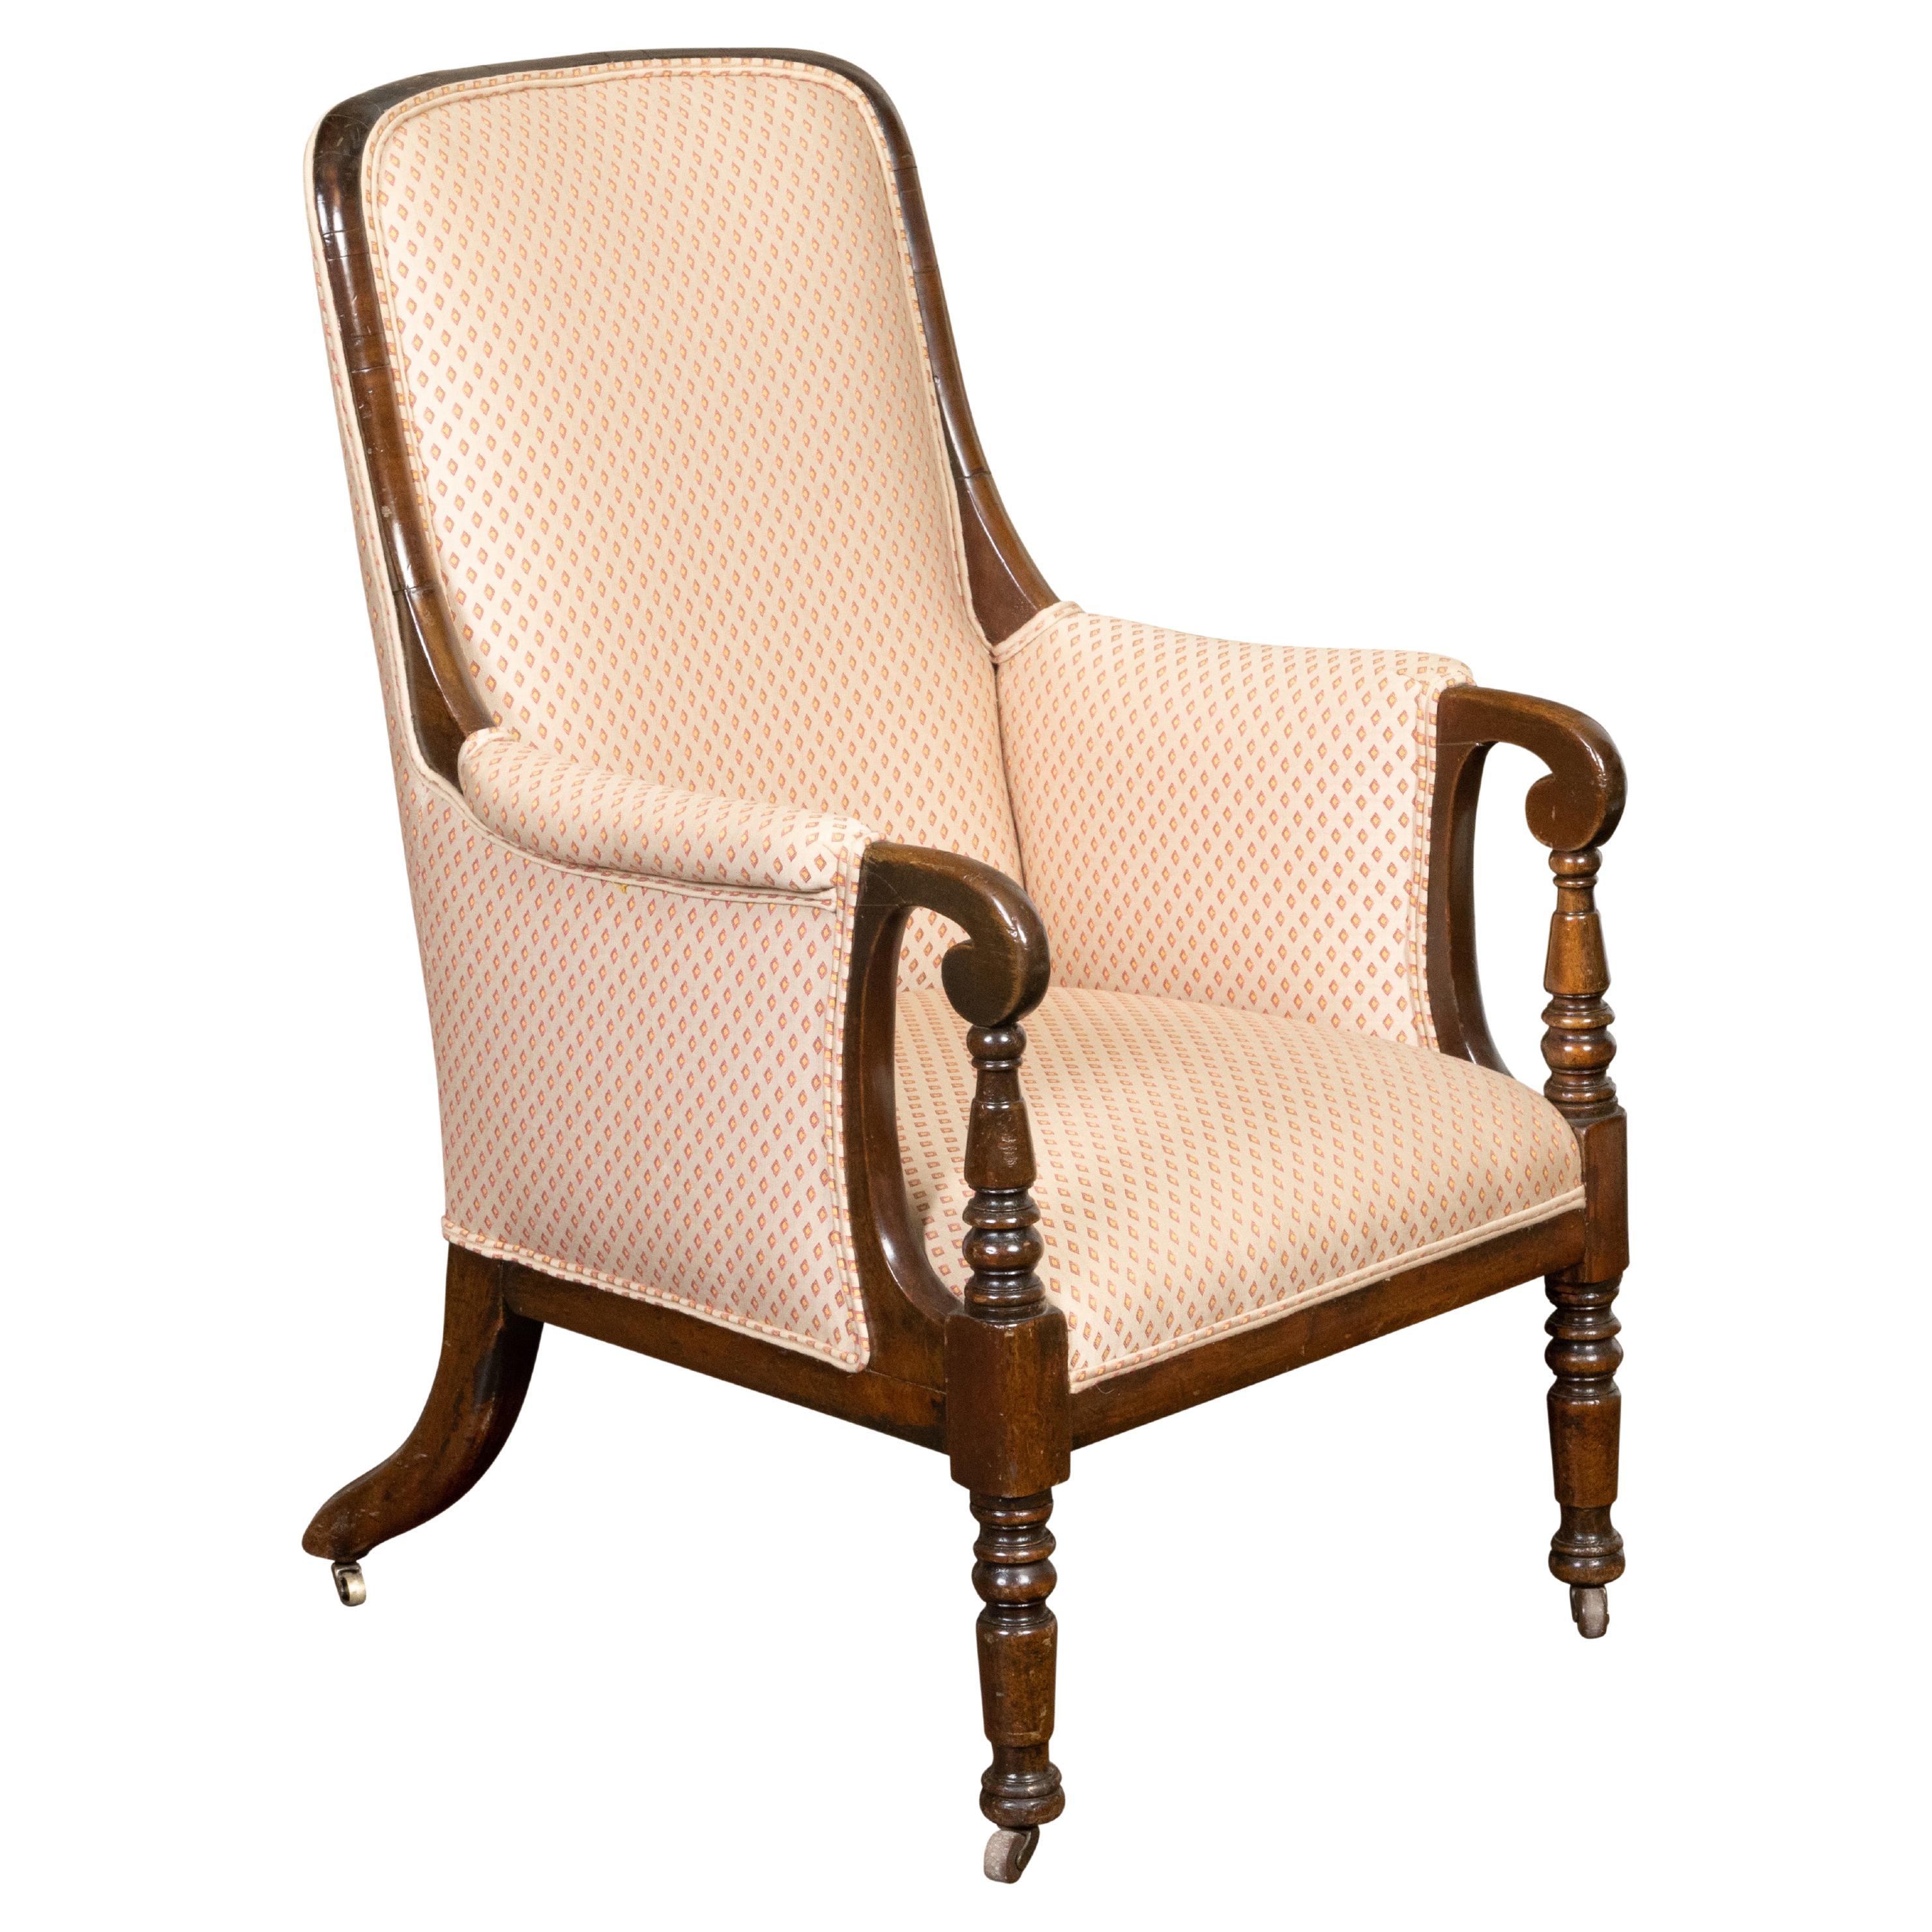 Englischer Regency-Mahagoni-Sessel aus den 1830er Jahren mit geschwungenen Armlehnen und Rollen